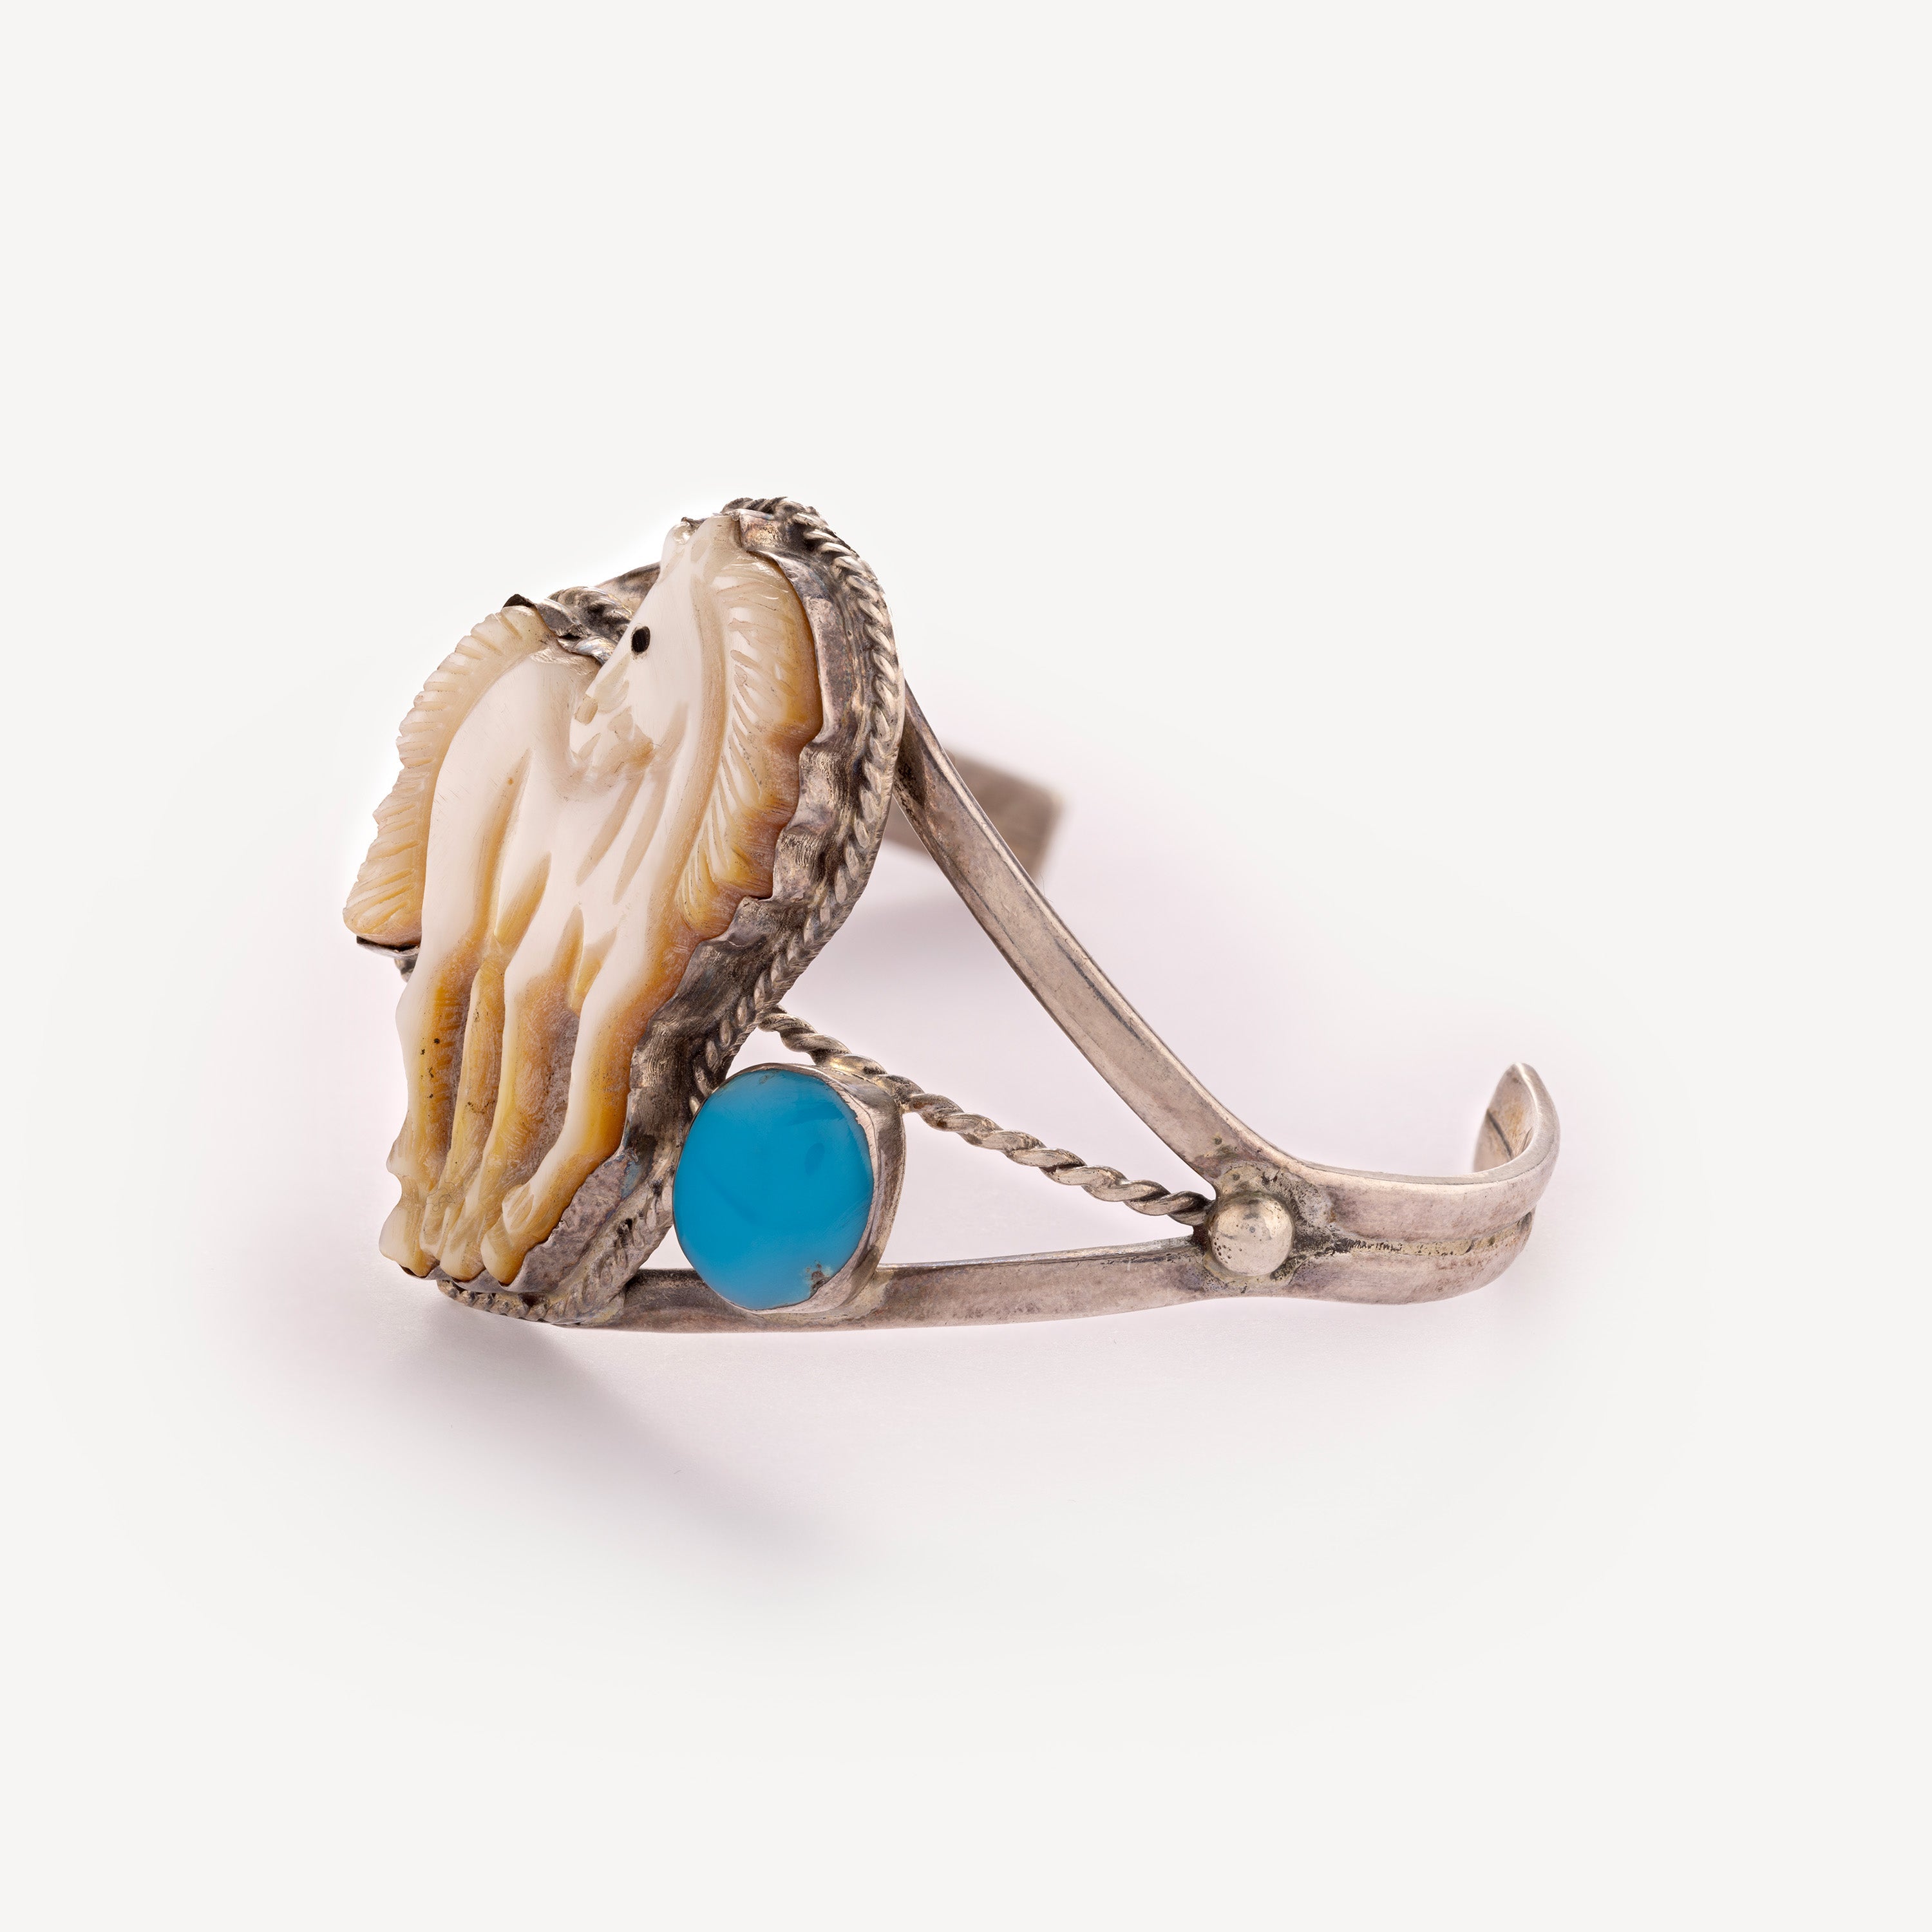 Nacre and turquoise horse bracelet